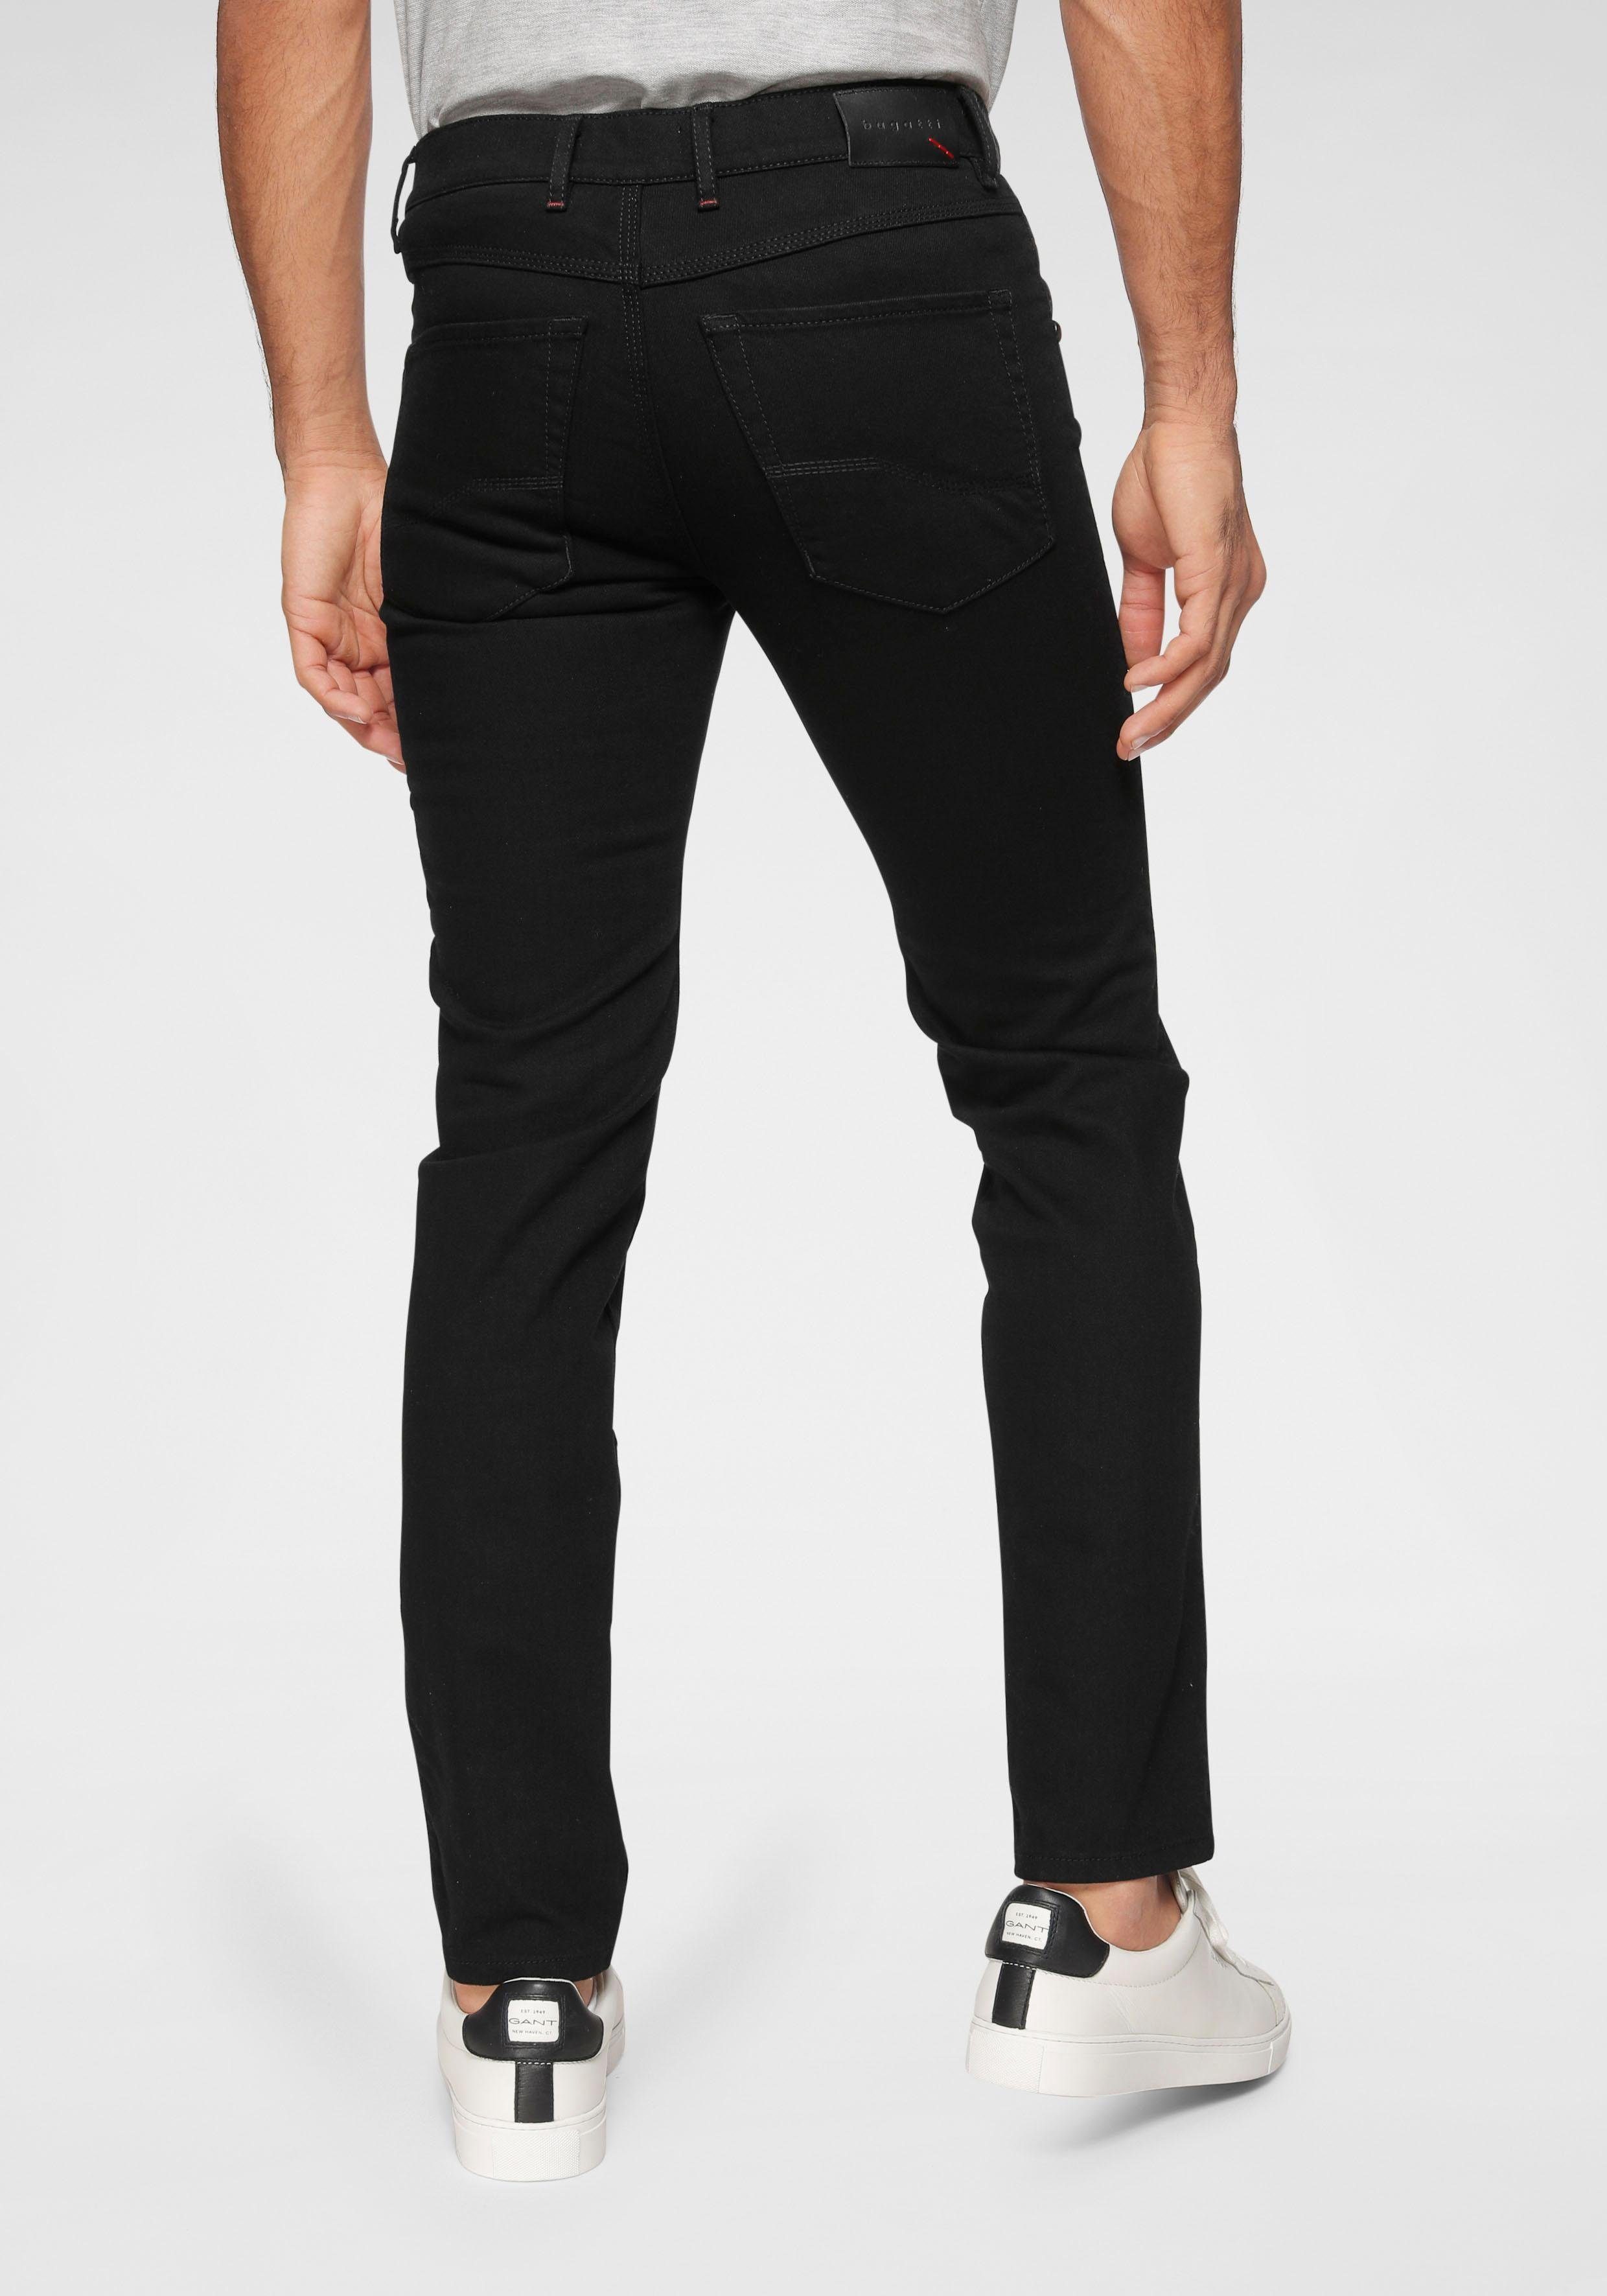 Bewegung black32 passt sich der Regular-fit-Jeans an bugatti Flexcity